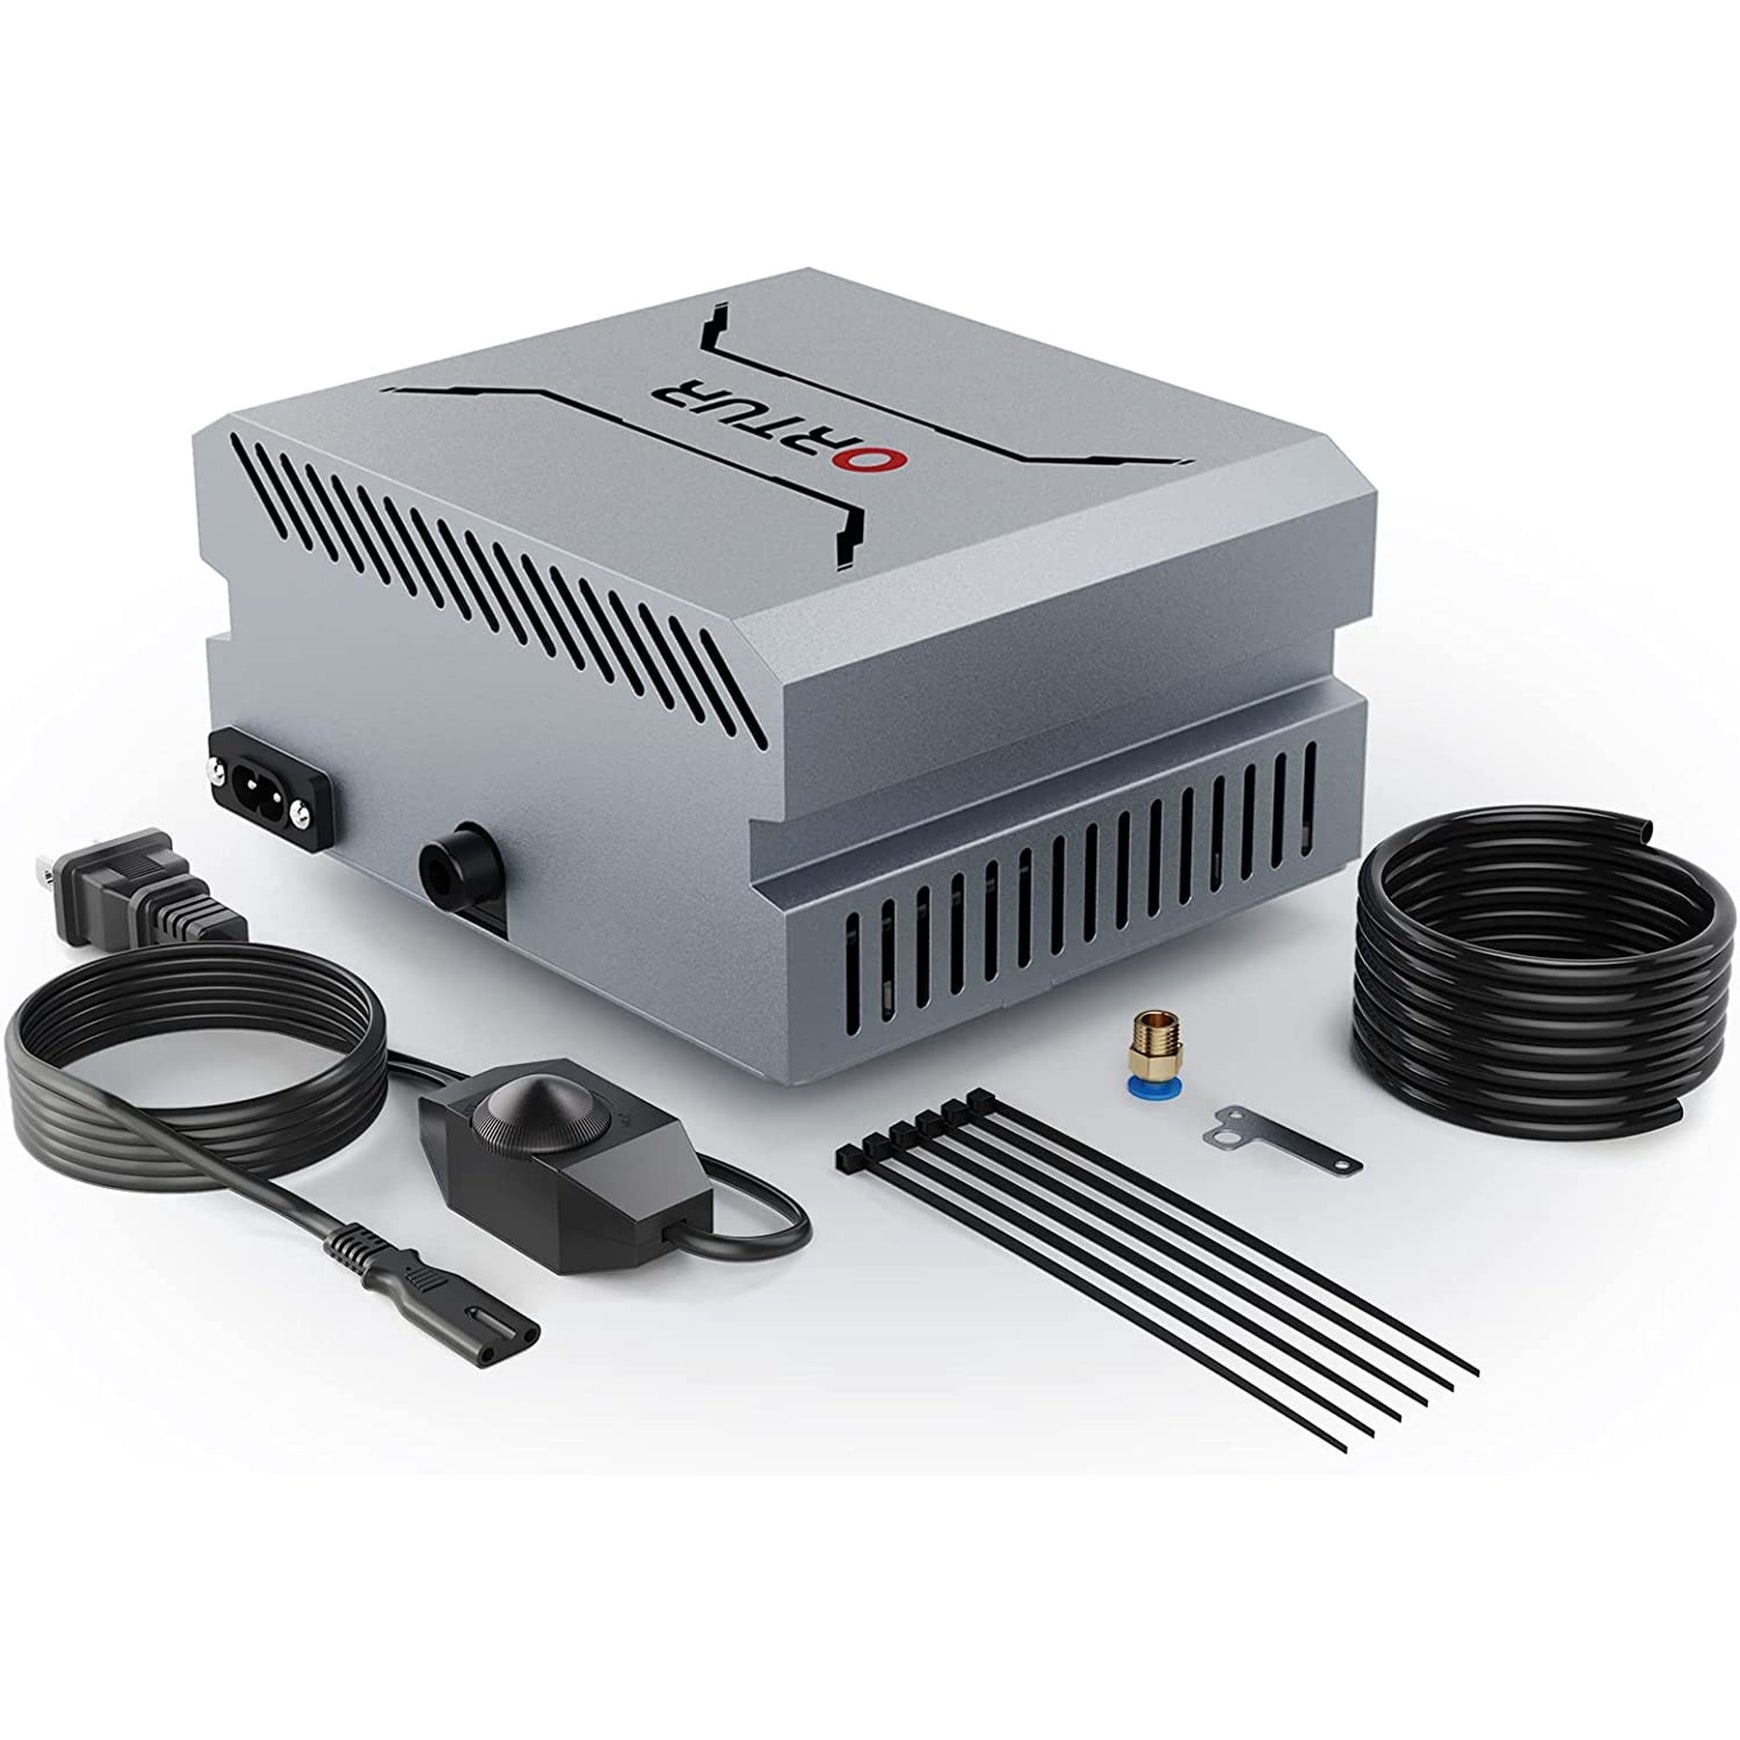 Ortur Air Assist Pump 1.0 for LU2-4 LF & LU2-10A Laser Engraver